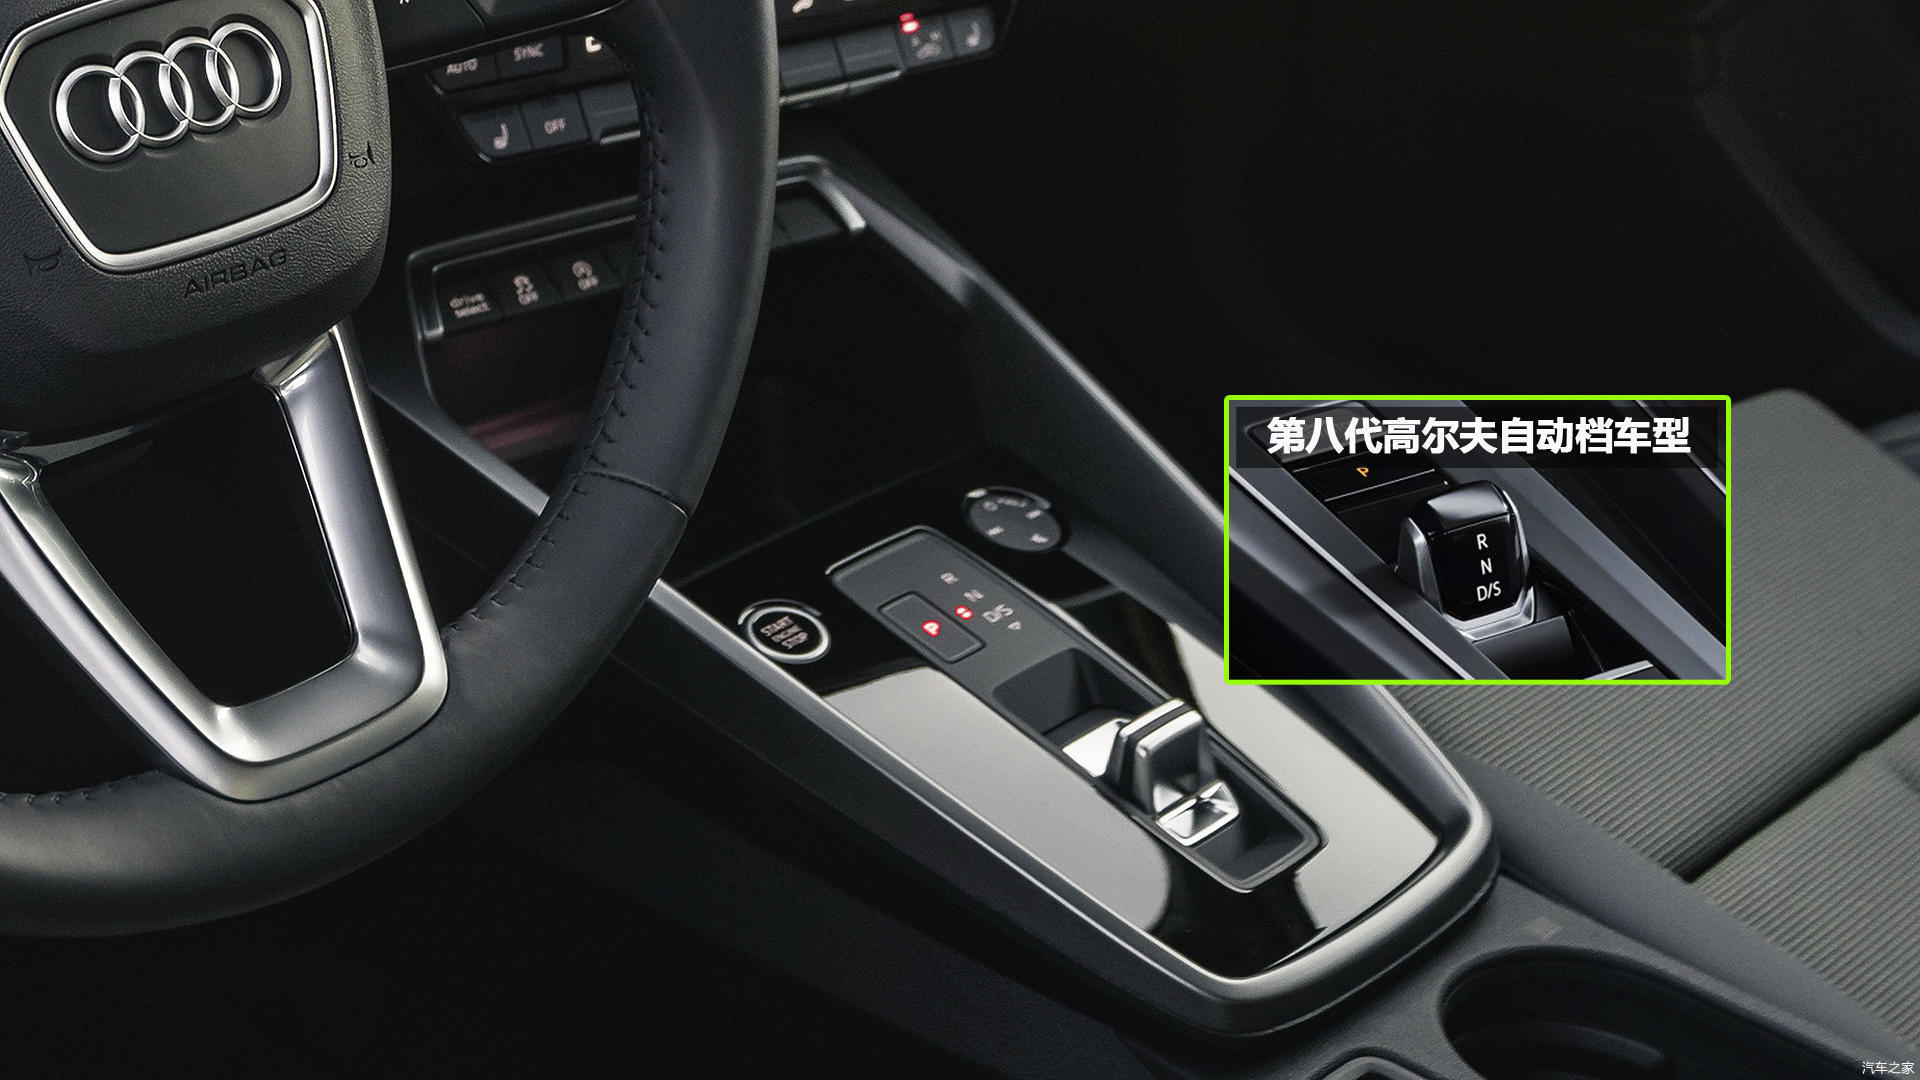 全新一代奥迪a3自动挡车型曝光 配备更有科技感的电子